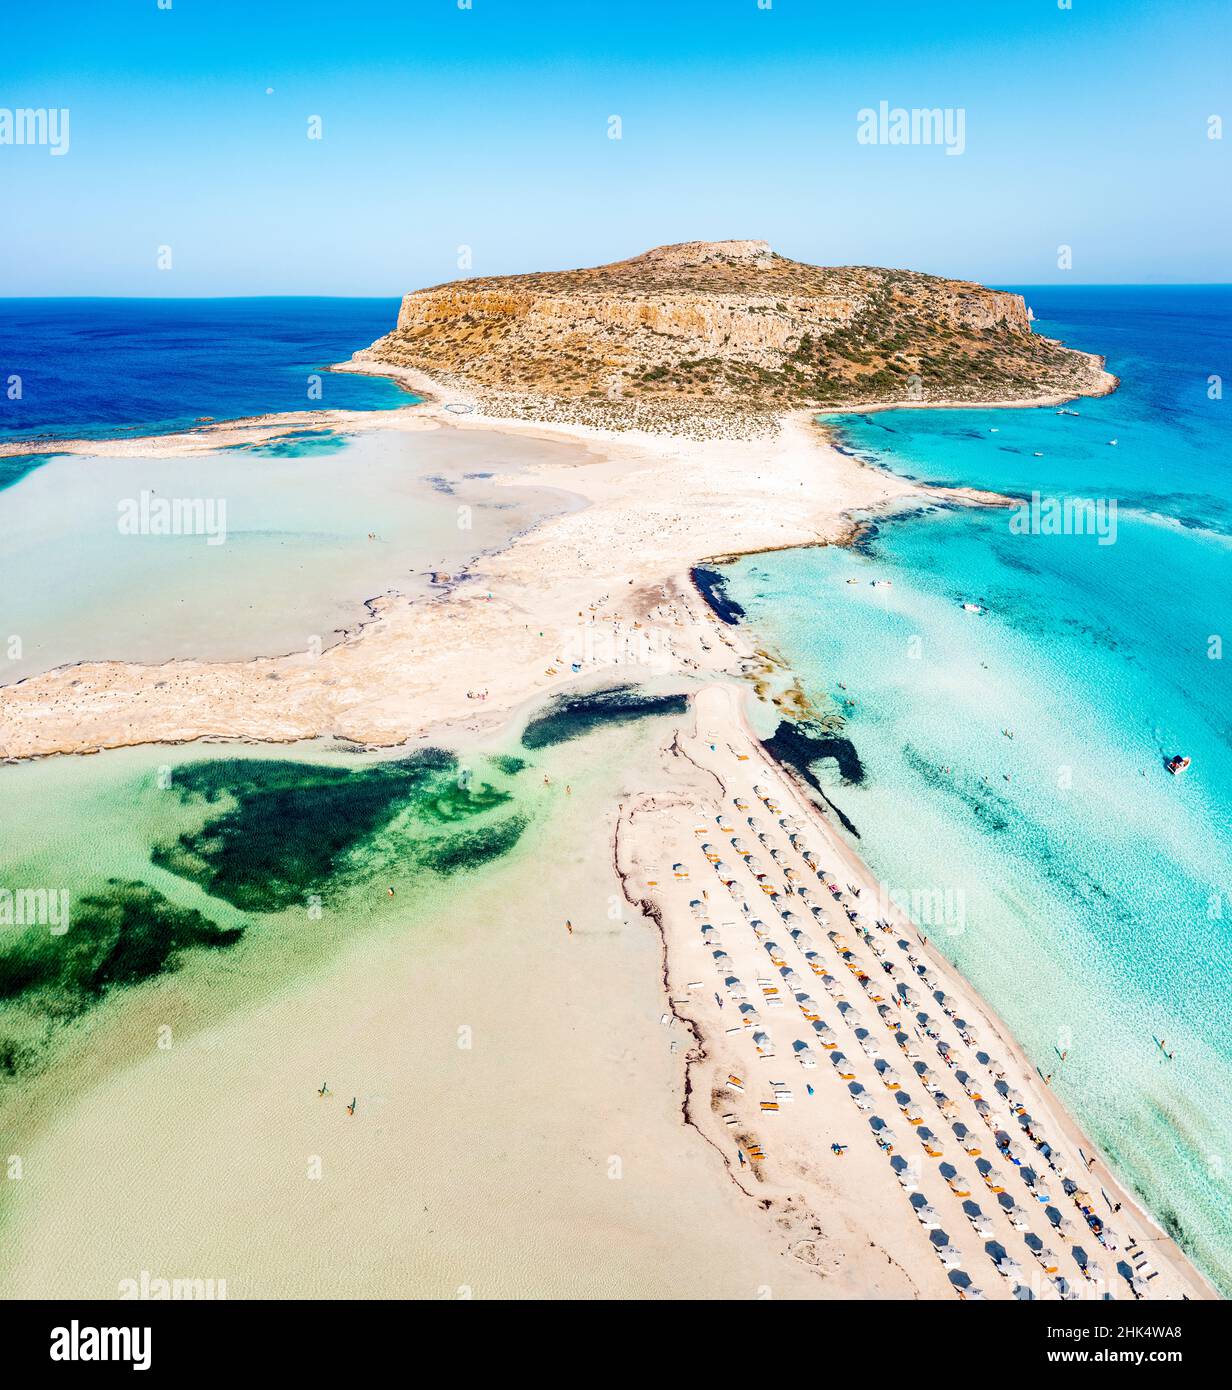 Luftaufnahme des Strandes und der Lagune von Balos, die vom türkisklaren Meer gewaschen werden, der Insel Kreta, der griechischen Inseln, Griechenlands, Europas Stockfoto